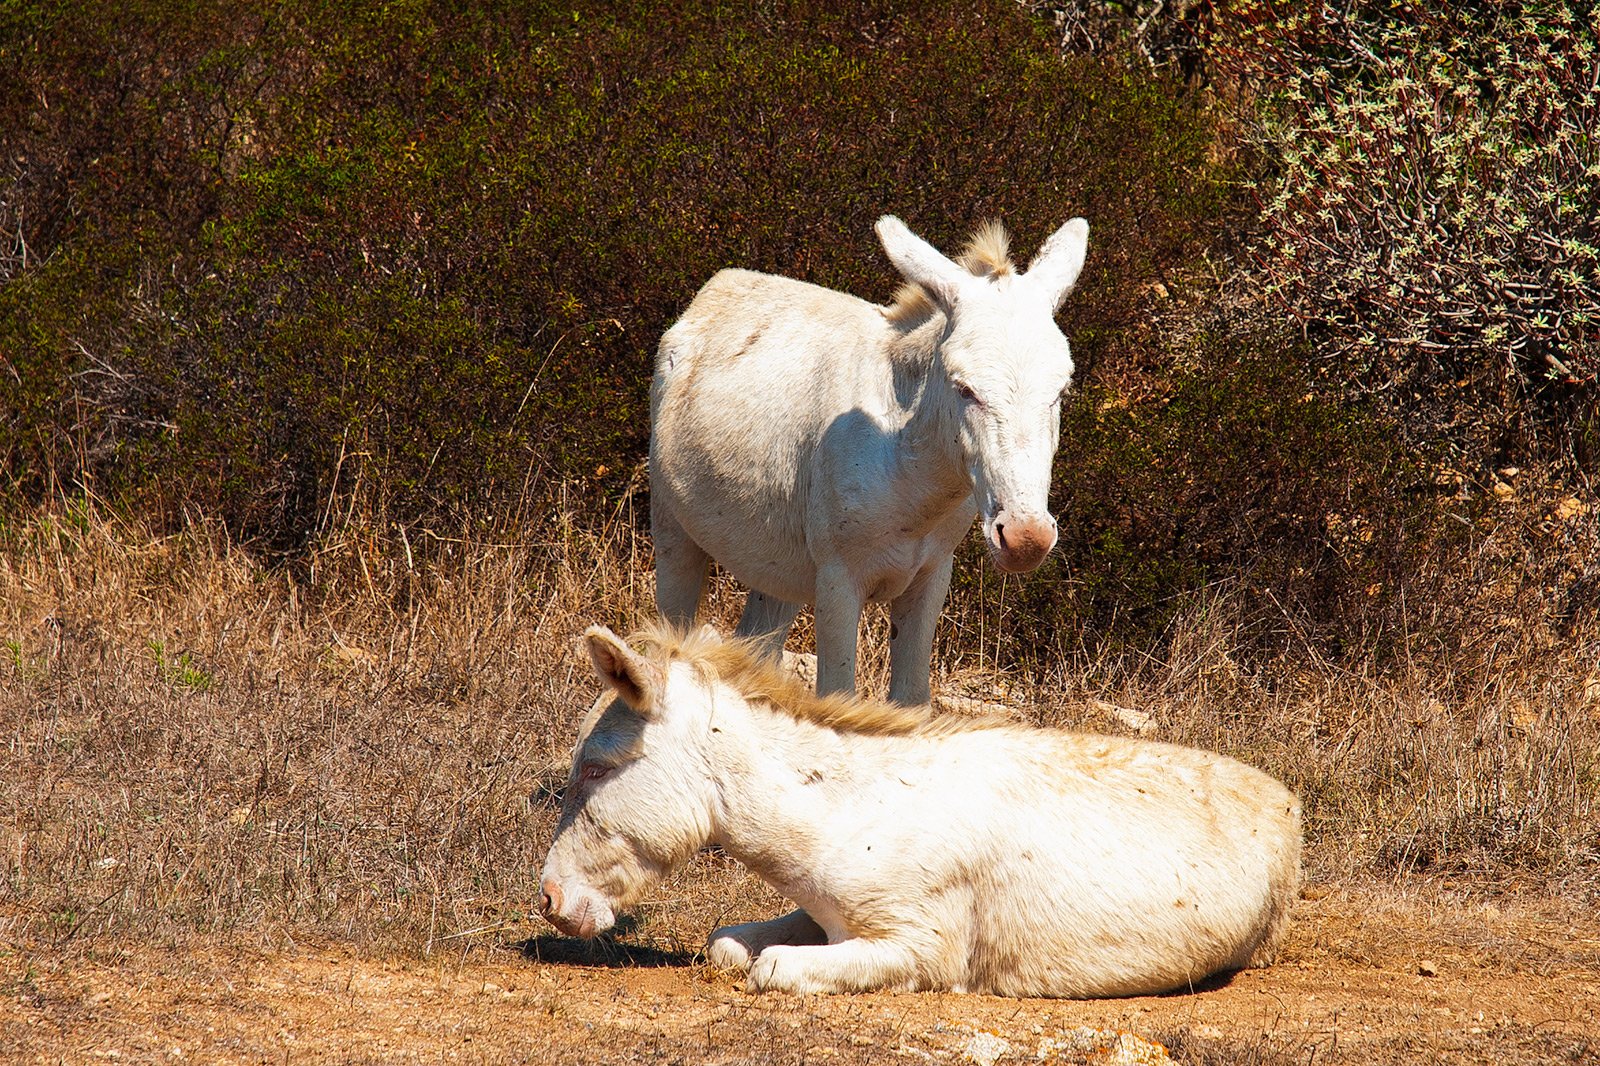 How to see albino donkeys on Sardinia